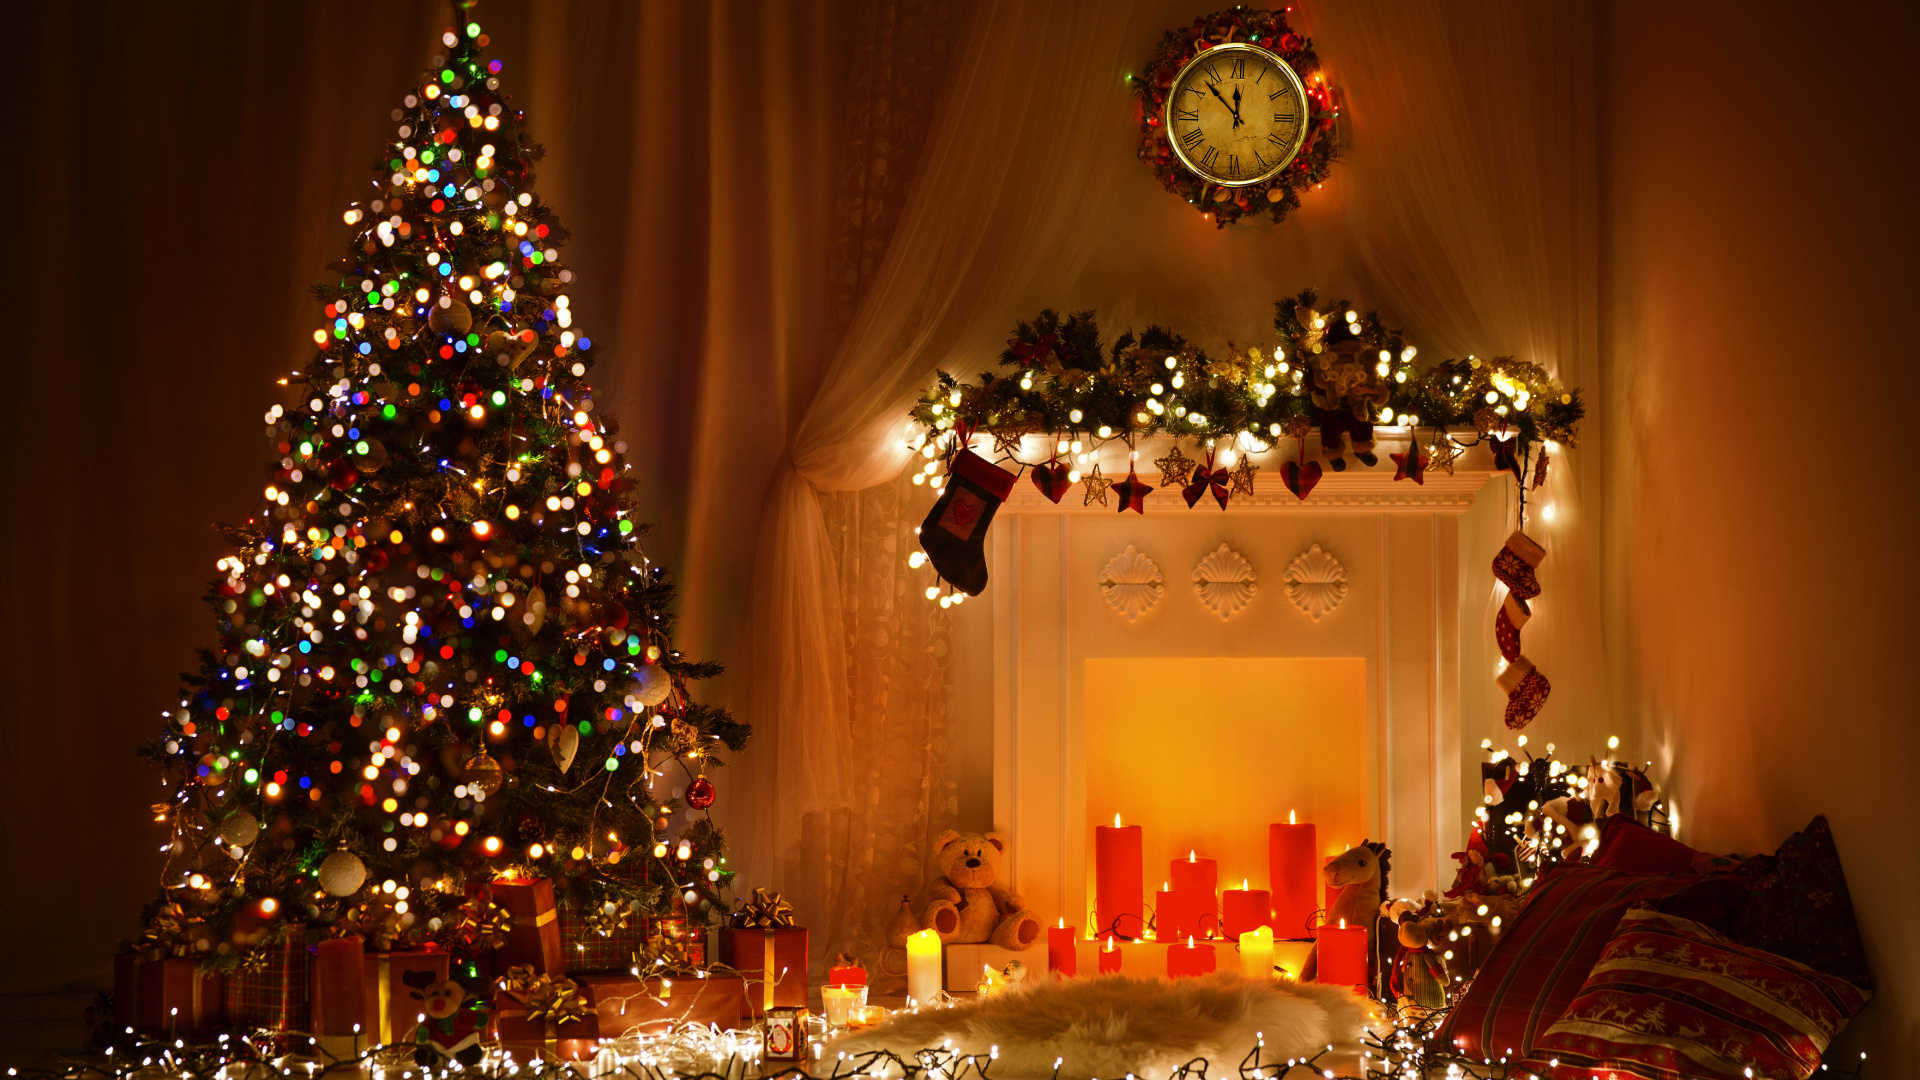 Le Jour De Noël, Arbre de Noël, Les Lumières de Noël, Décoration de Noël, Ornement de Noël. Wallpaper in 1920x1080 Resolution